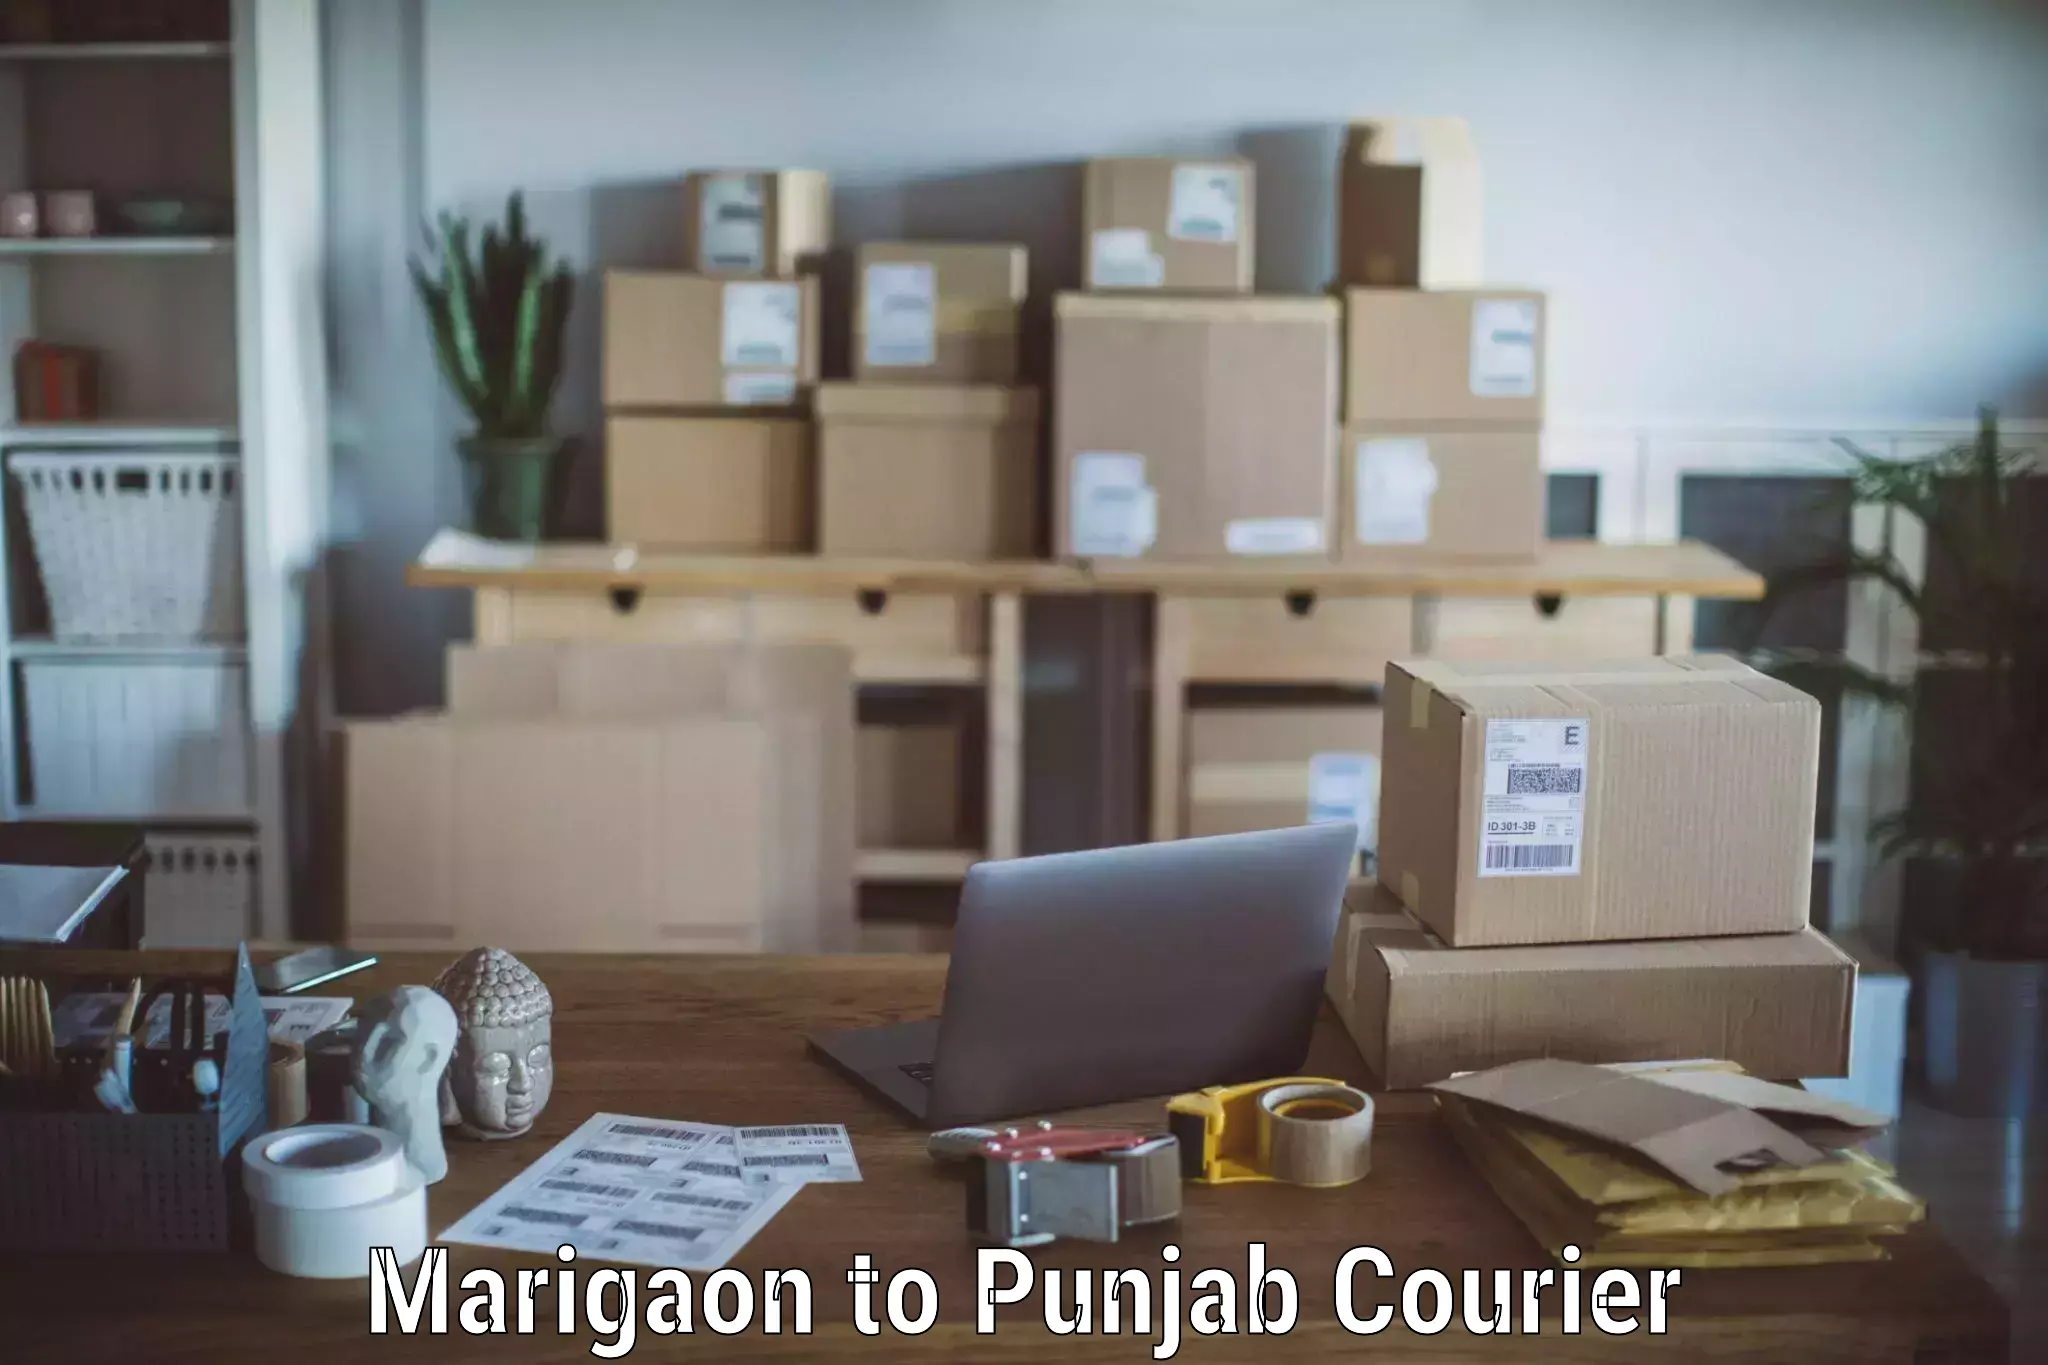 Stress-free moving Marigaon to Punjab